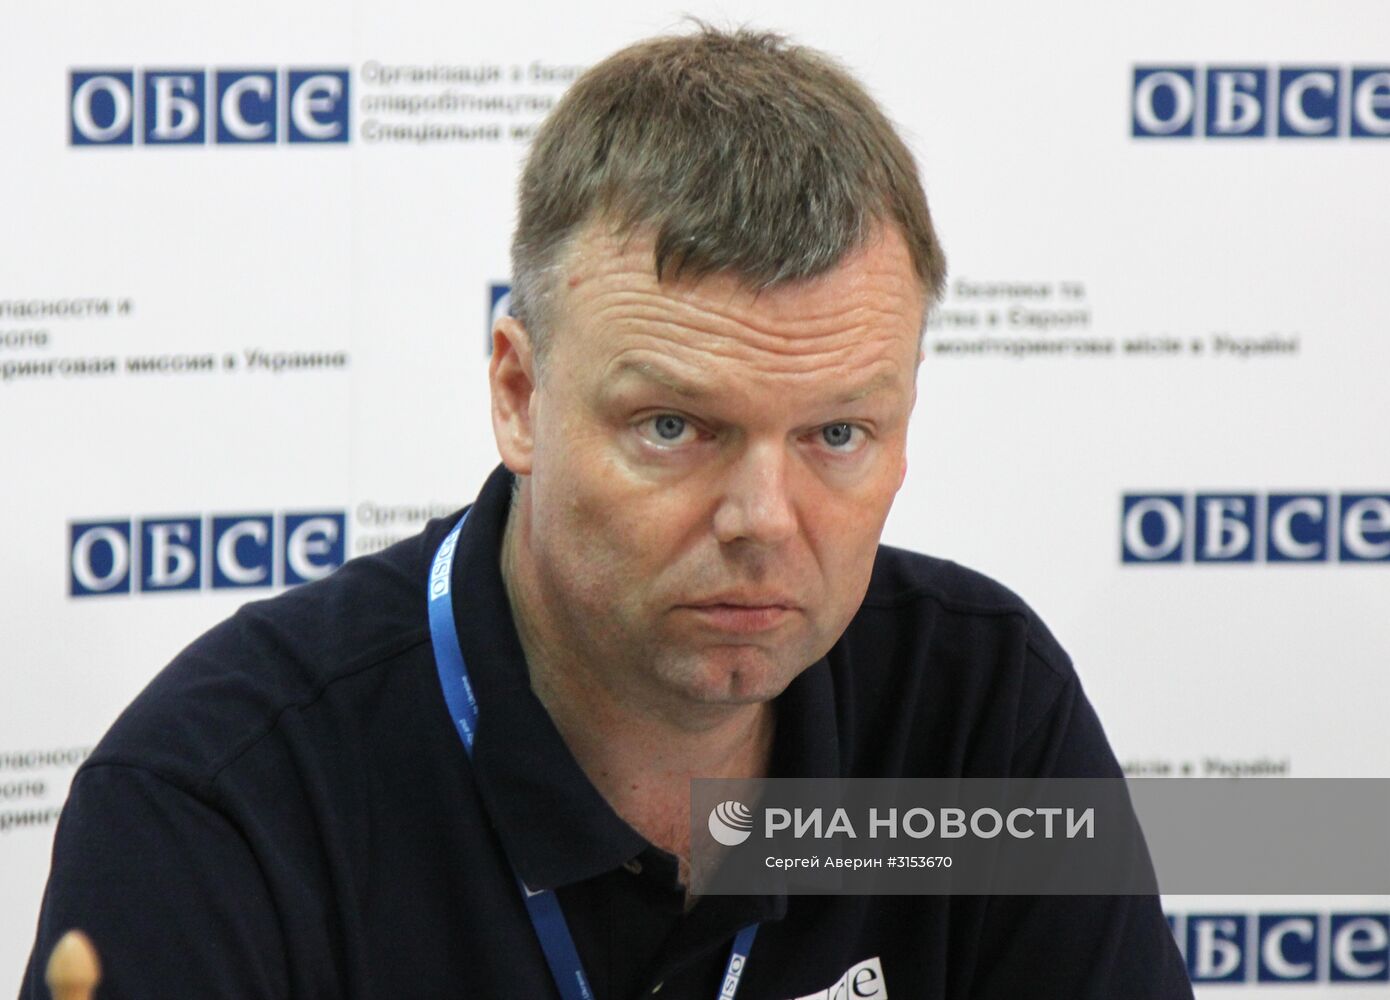 Первый замглавы СММ ОБСЕ на Украине А. Хуг посетил станицу Луганская